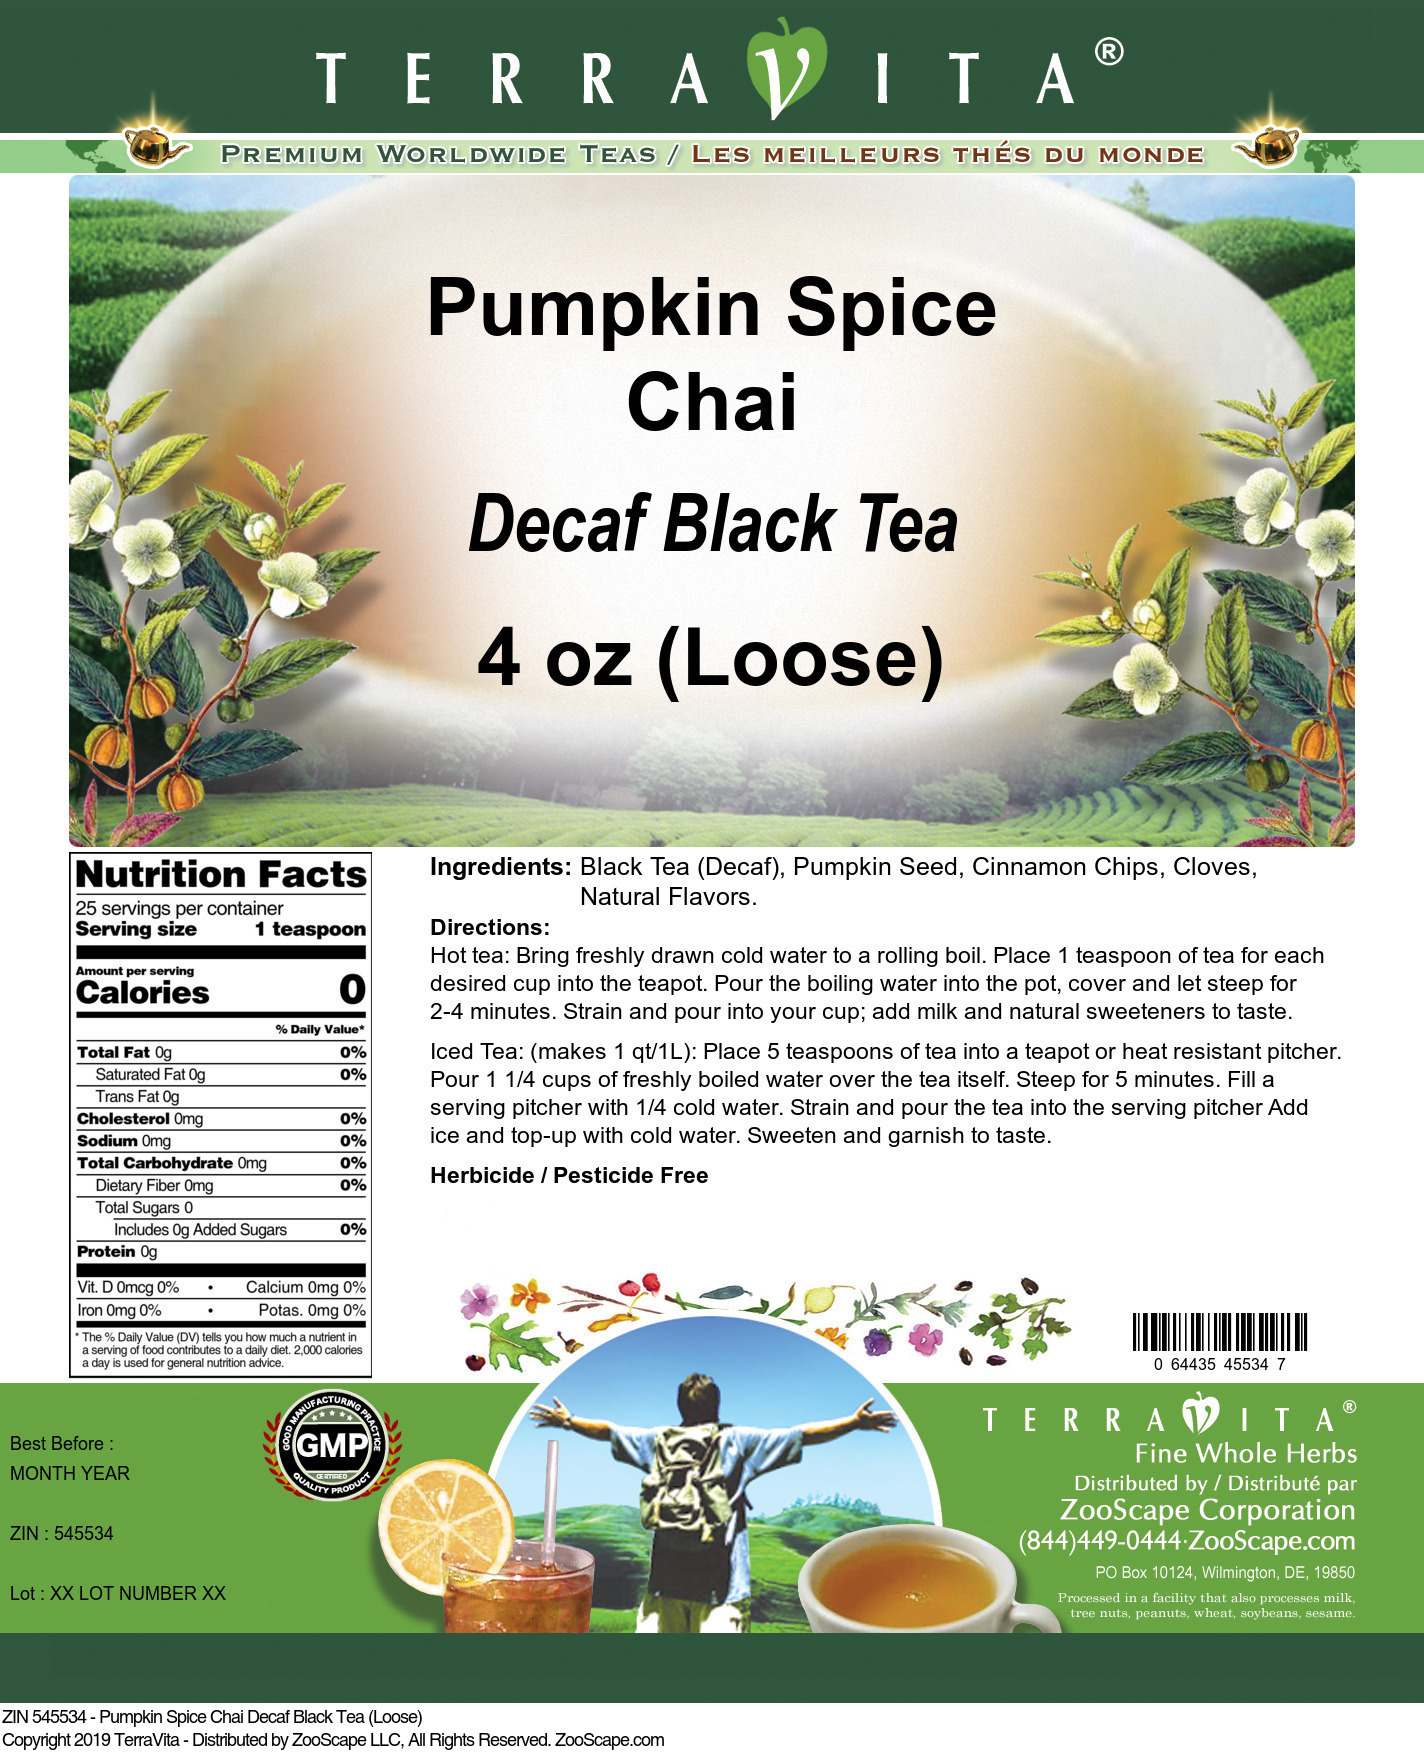 Pumpkin Spice Chai Decaf Black Tea (Loose) - Label